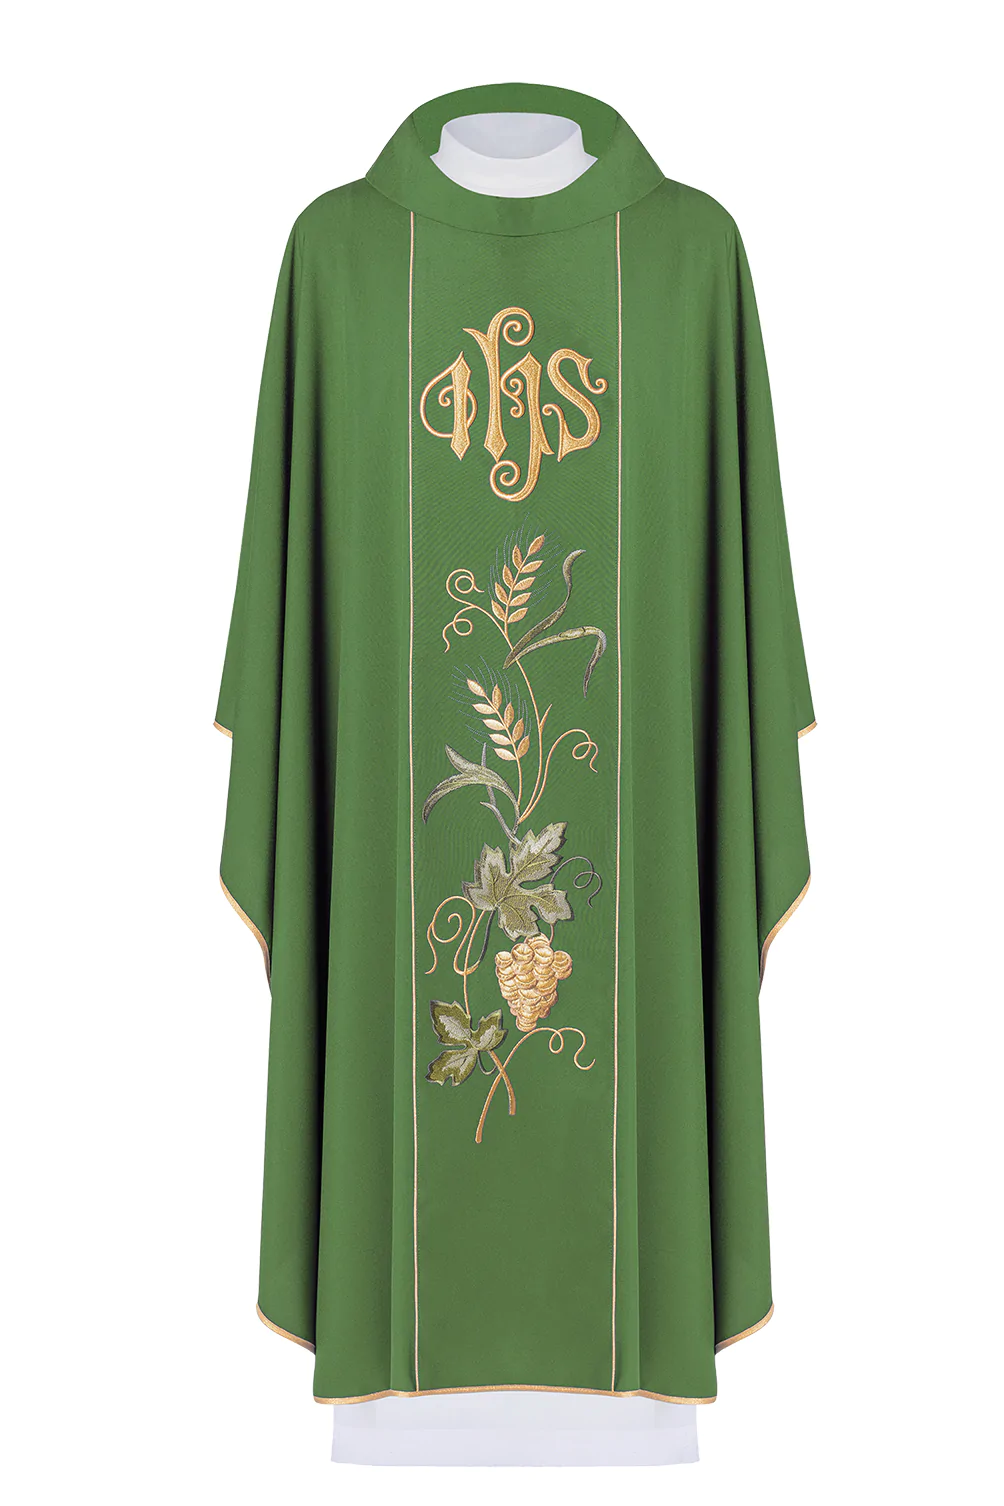 Ornat zielony dla księdza, haftowany